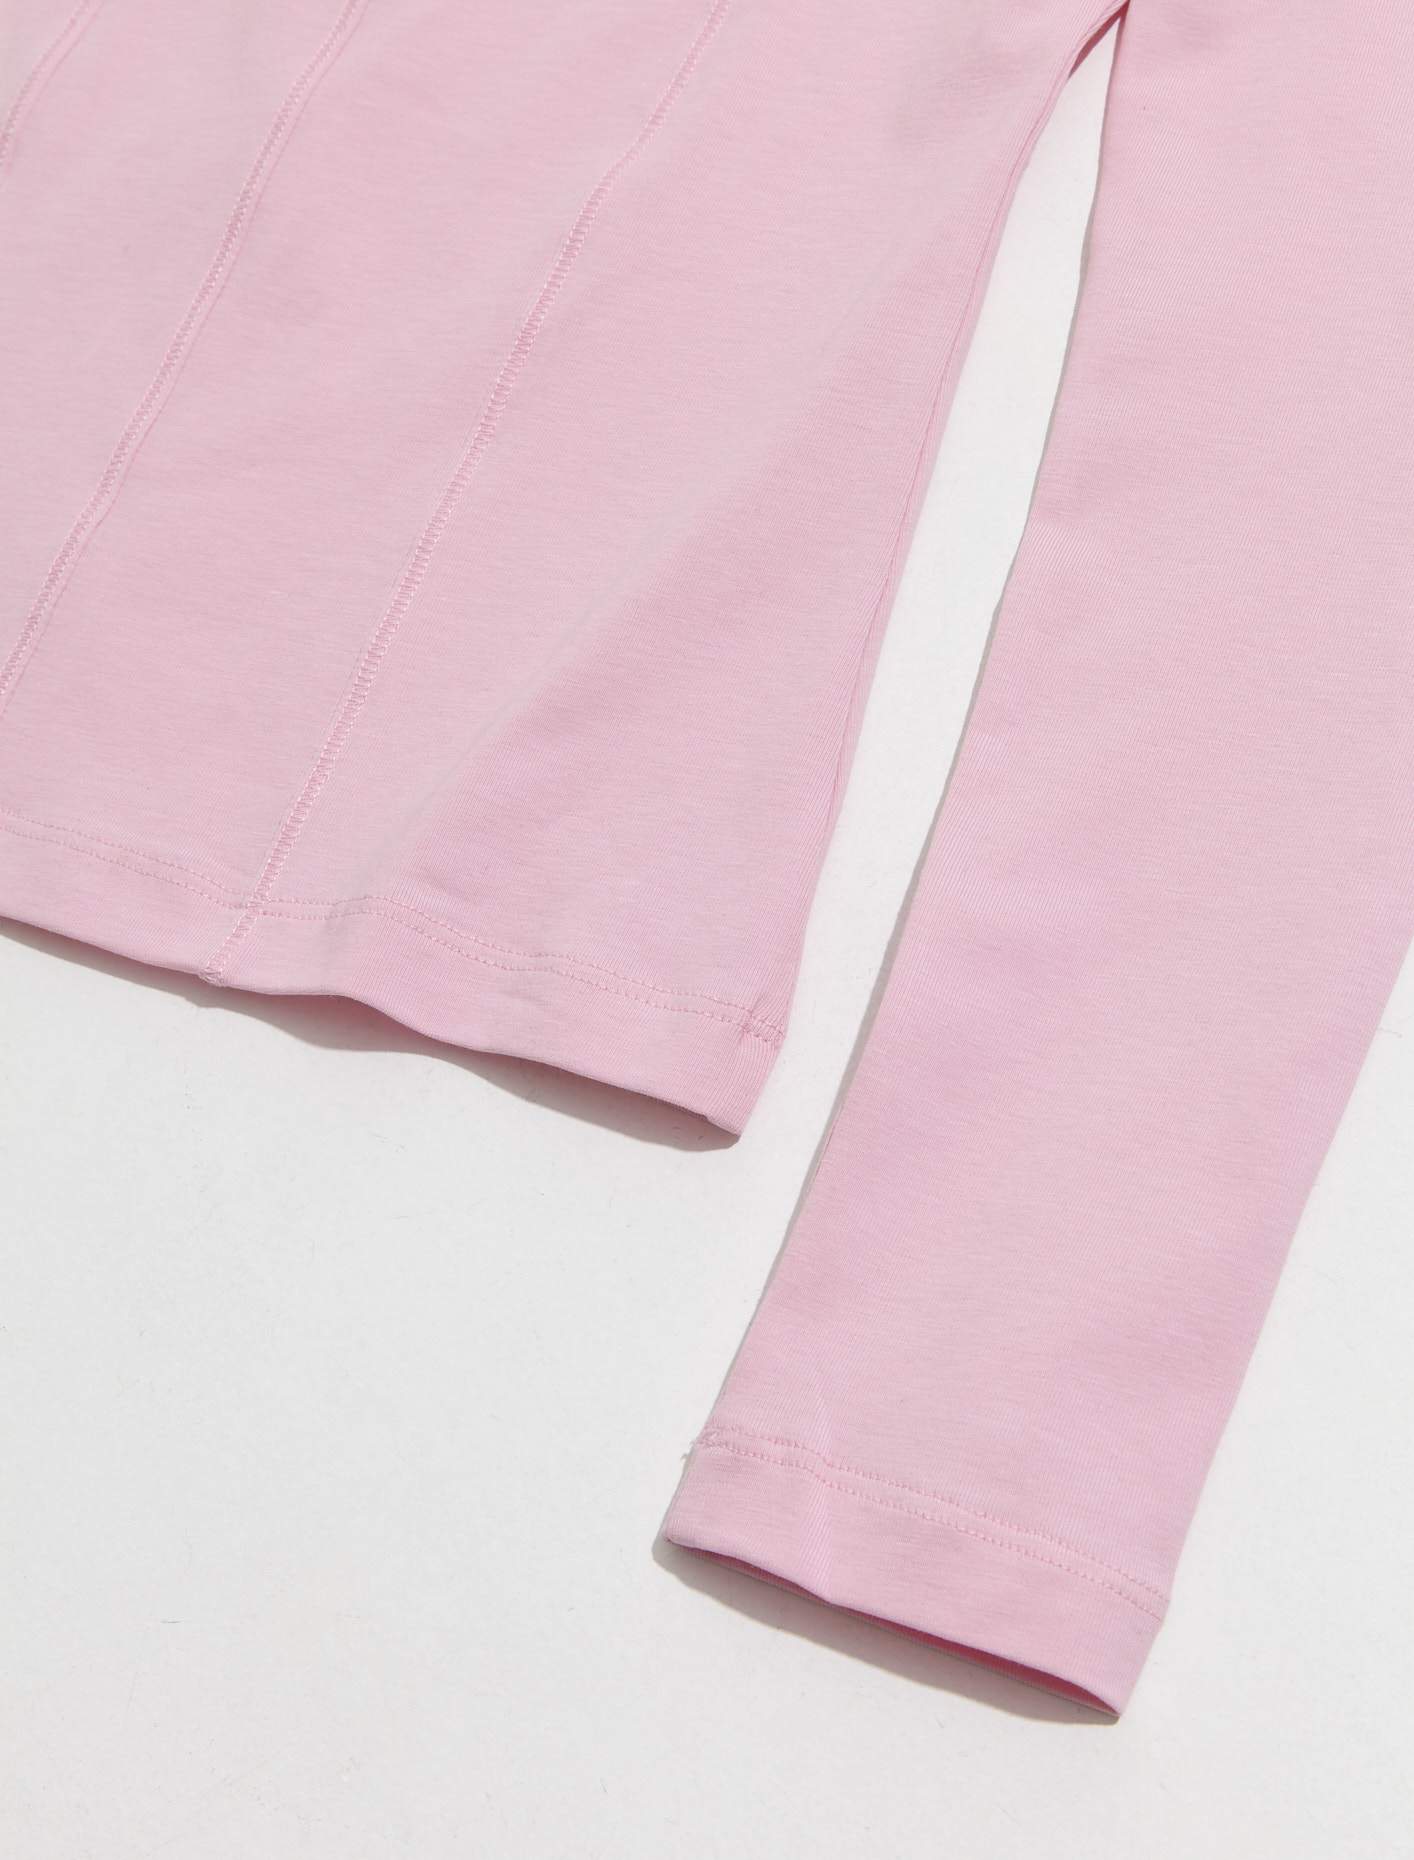 Le T-shirt Sierra in Pink